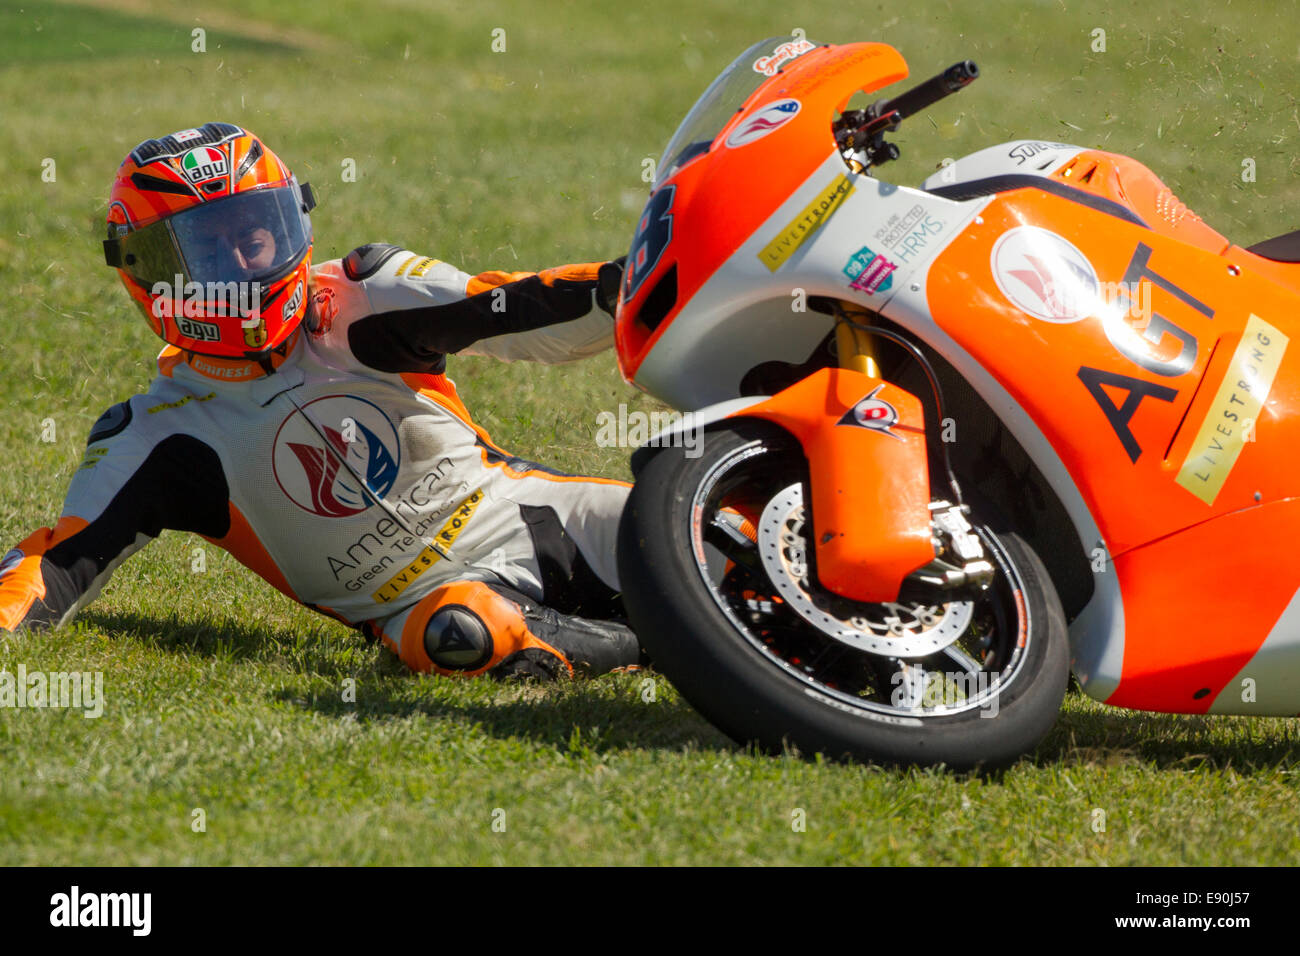 Phillip Island, Australie. 17 octobre, 2014. Cavalier britannique Gino Rea  s'écrase durant la première session d'essais de la catégorie Moto2. Rea,  école pour AGT Rea Racing Moto2 Team n'a pas été blessé.